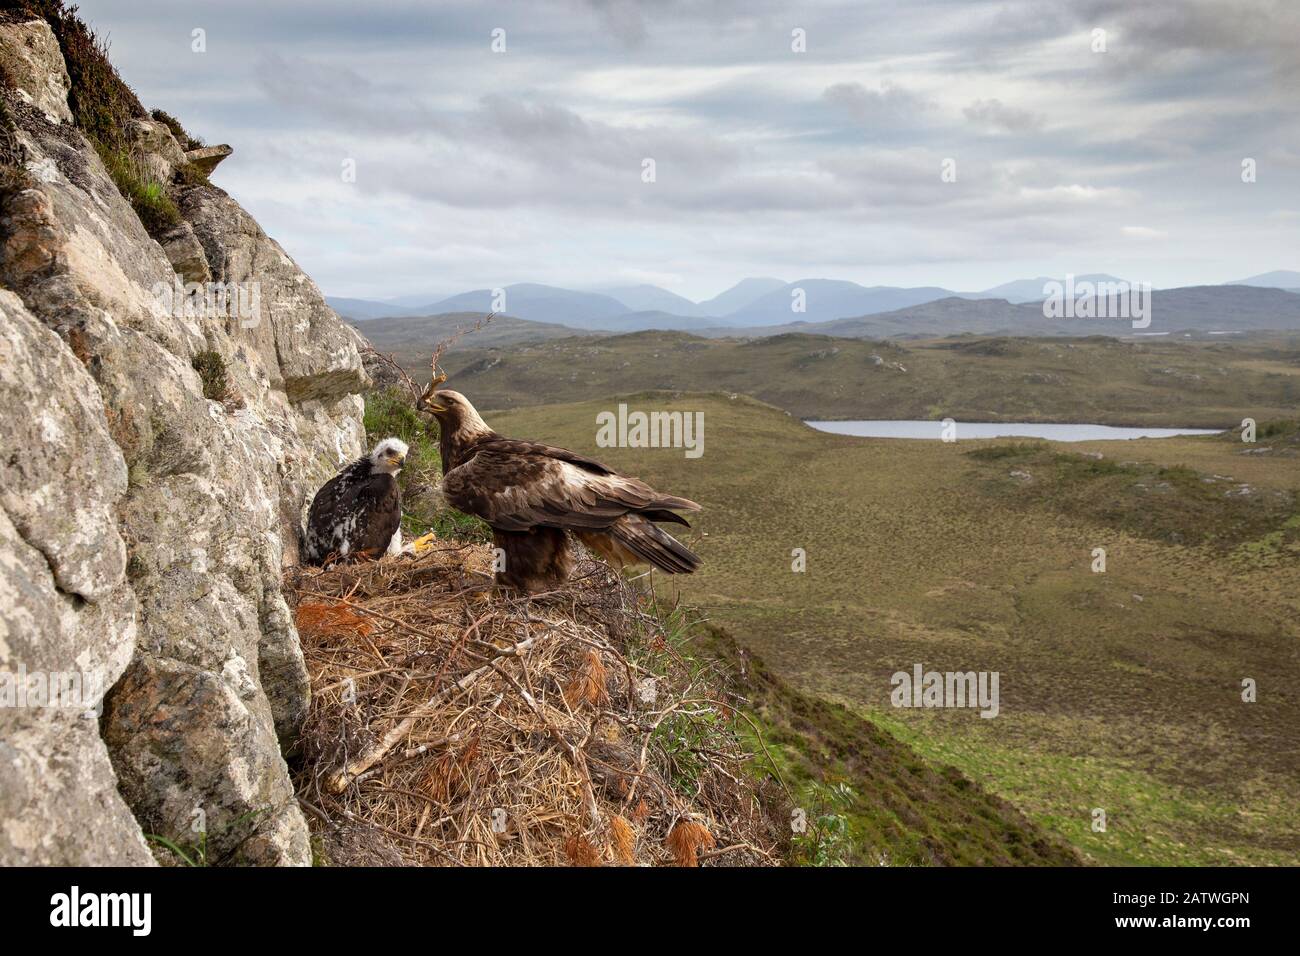 Águila de oro (Aquila chrysaetos) adulto con material de nido en la vista con un polluelo que muestra el fondo, Isla de Lewis, Escocia, Reino Unido., mayo. Foto de stock